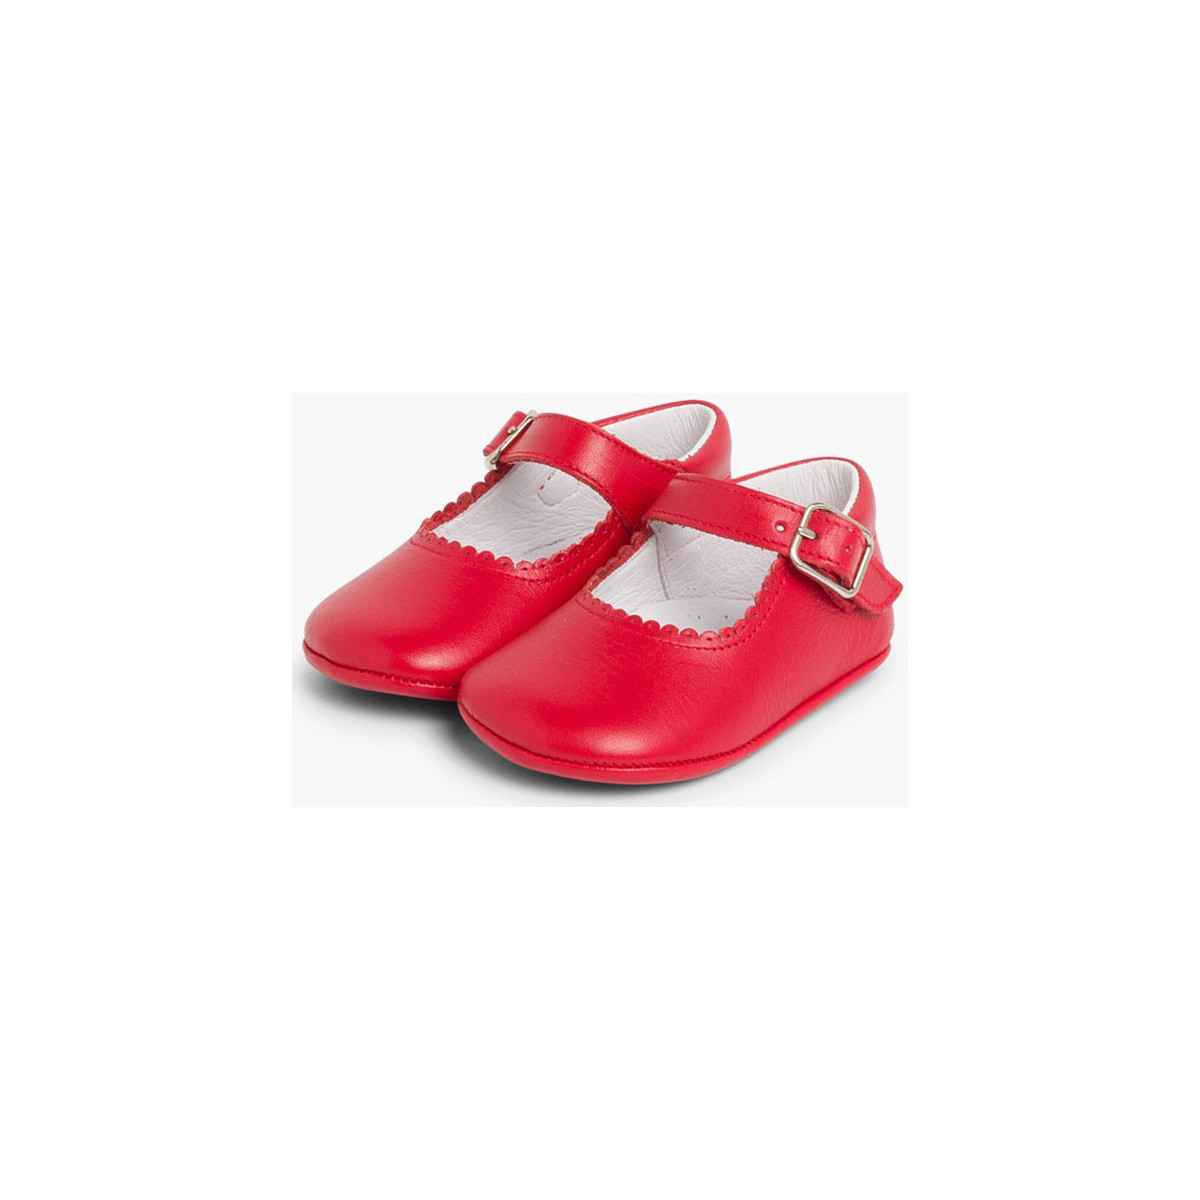 Pisamonas Rouge Chaussures babies en cuir avec fermeture à boucle pour bébés r6dWlWgc